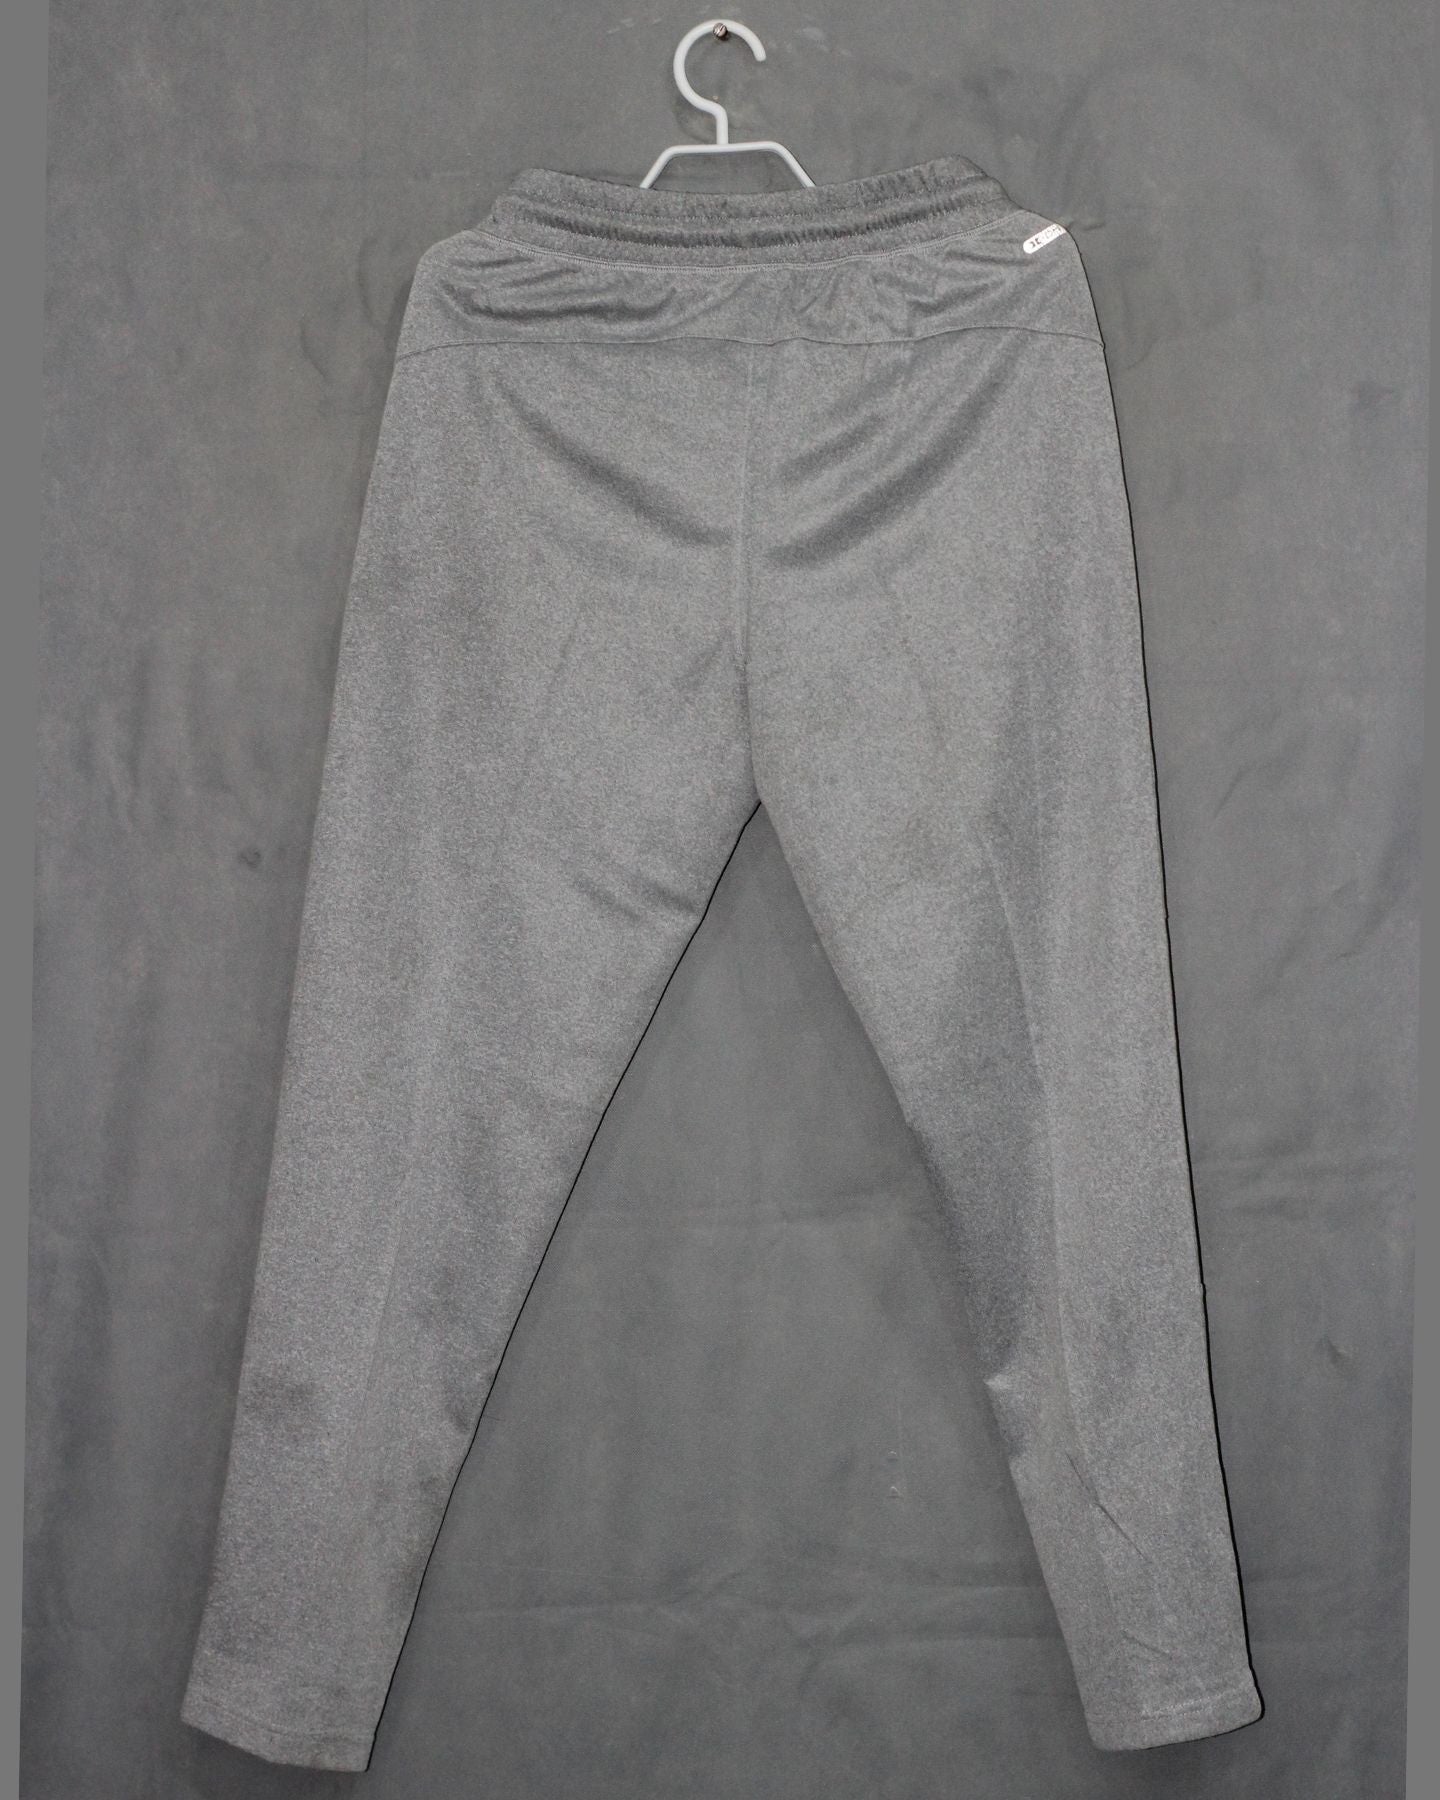 RBX Branded Original Sports Trouser For Men